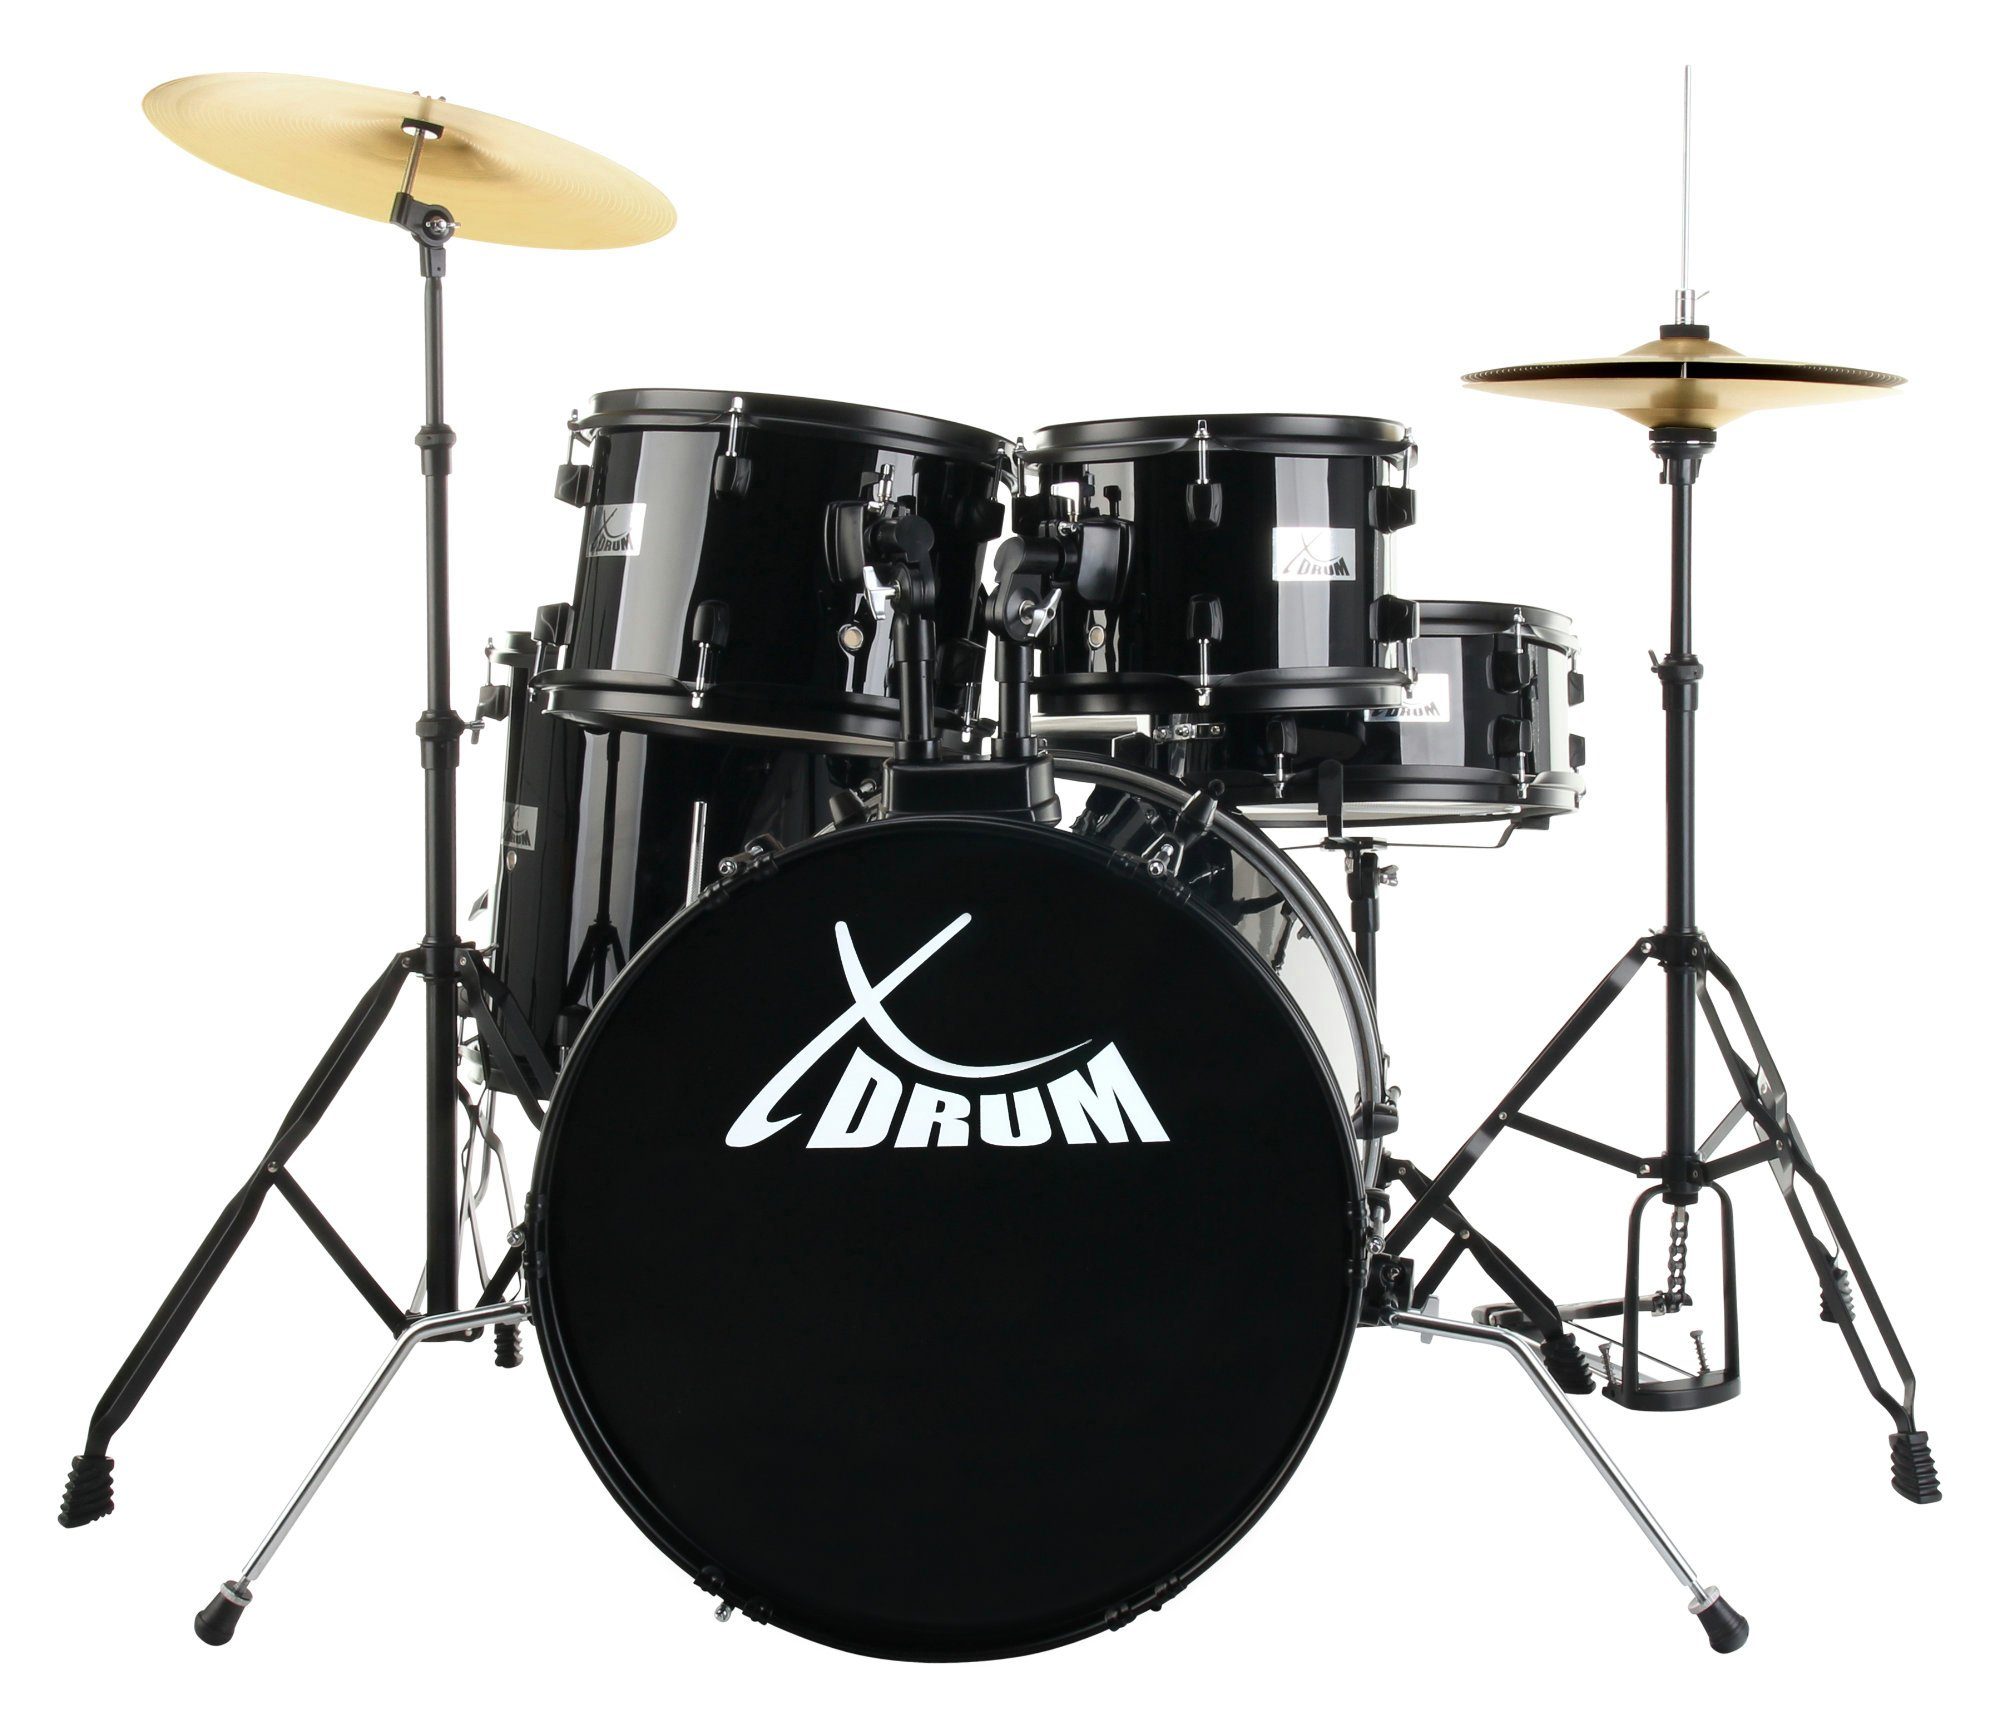 XDrum Schlagzeug Rookie 20" Studio,Komplettes Drumset, inkl. Hocker & Drumsticks, Kesselgrößen: 20" BD, 10", 12", 14" TT, 14 SN